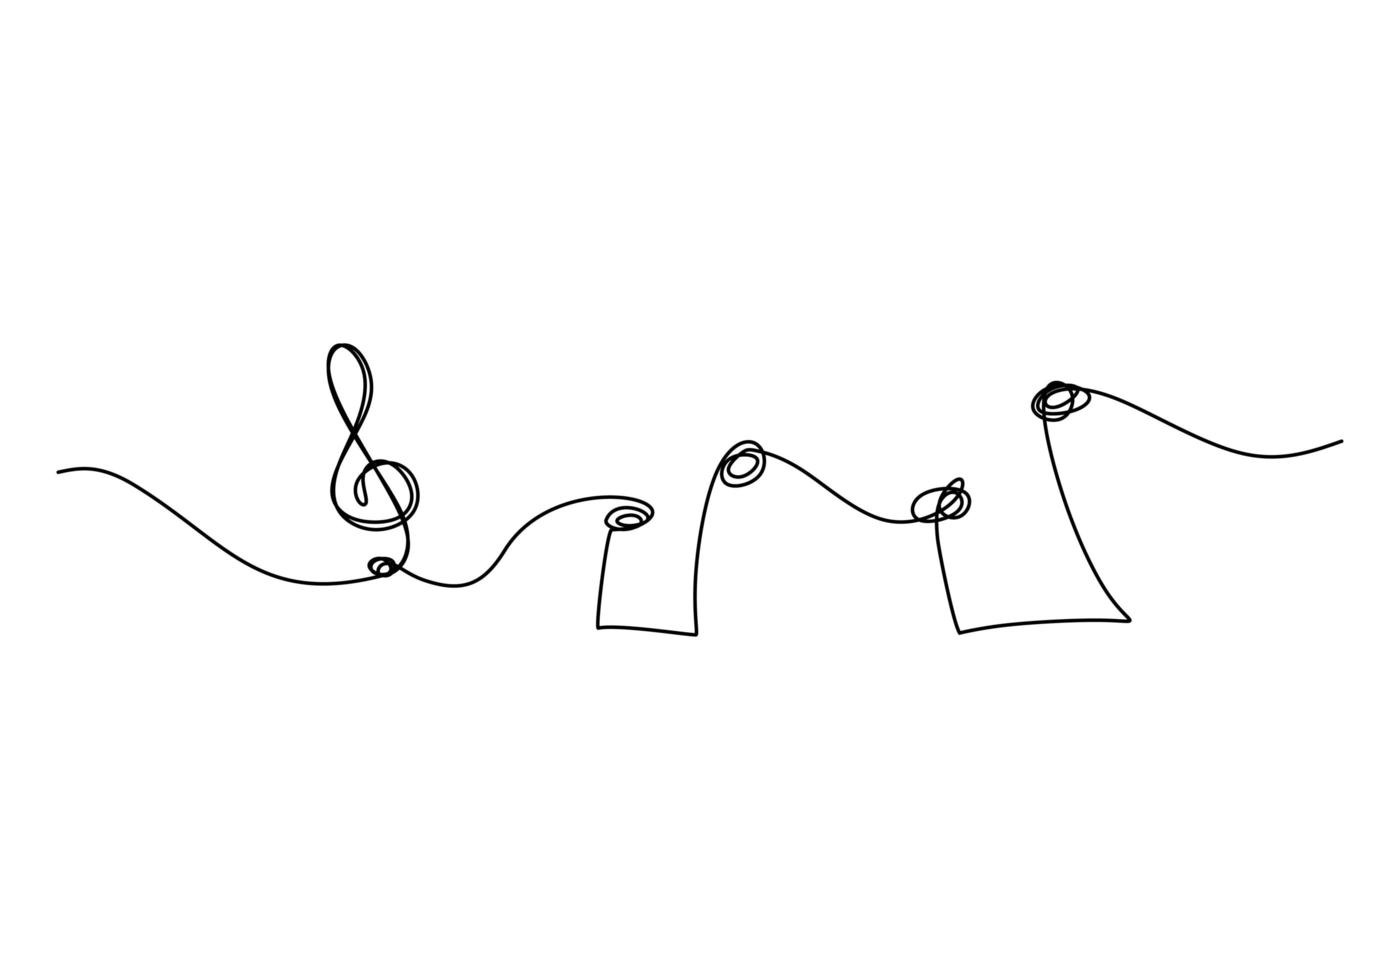 disegno continuo di una linea. illustrazione di vettore di simbolo di musica. stile minimalista isolato su sfondo bianco.